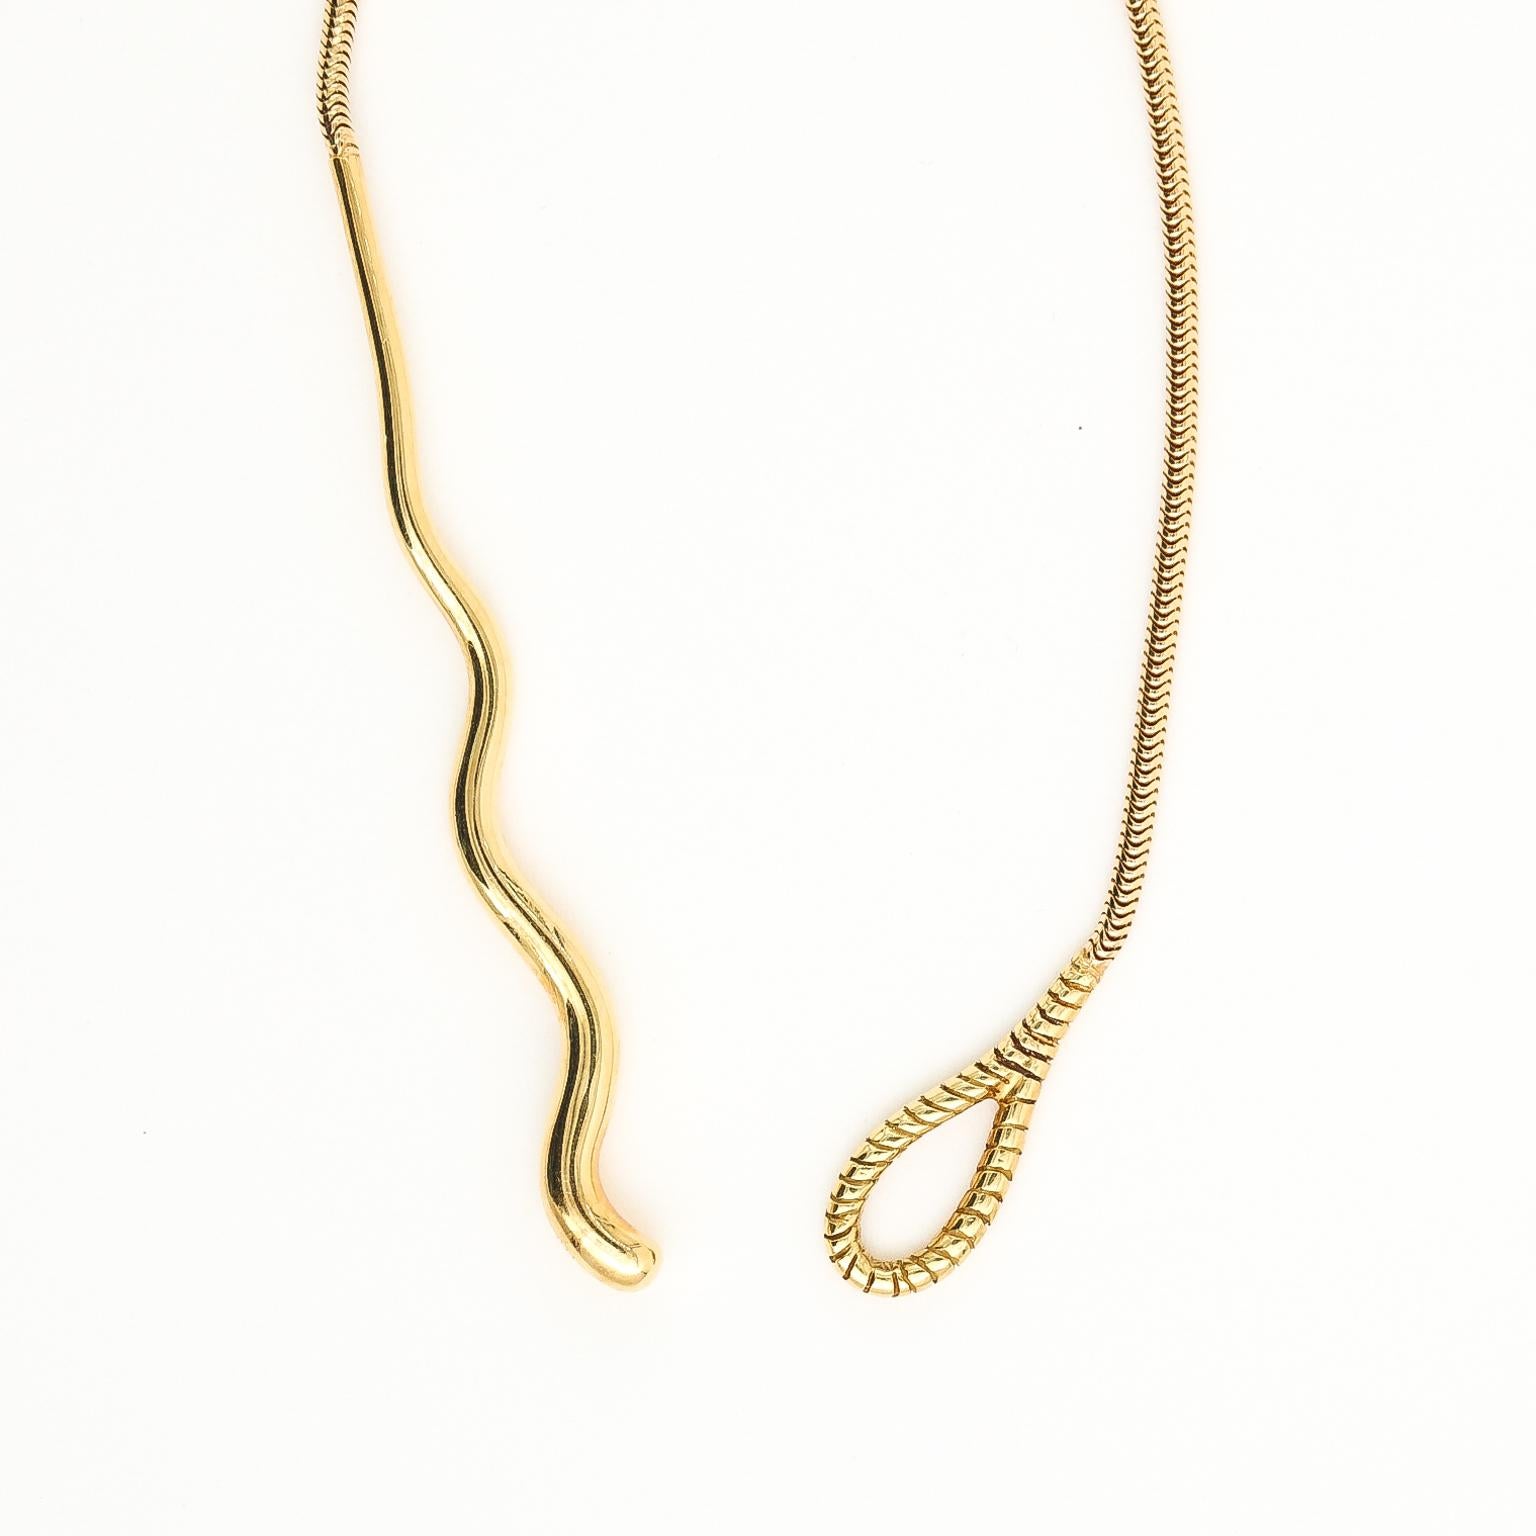 18k gold snake chain